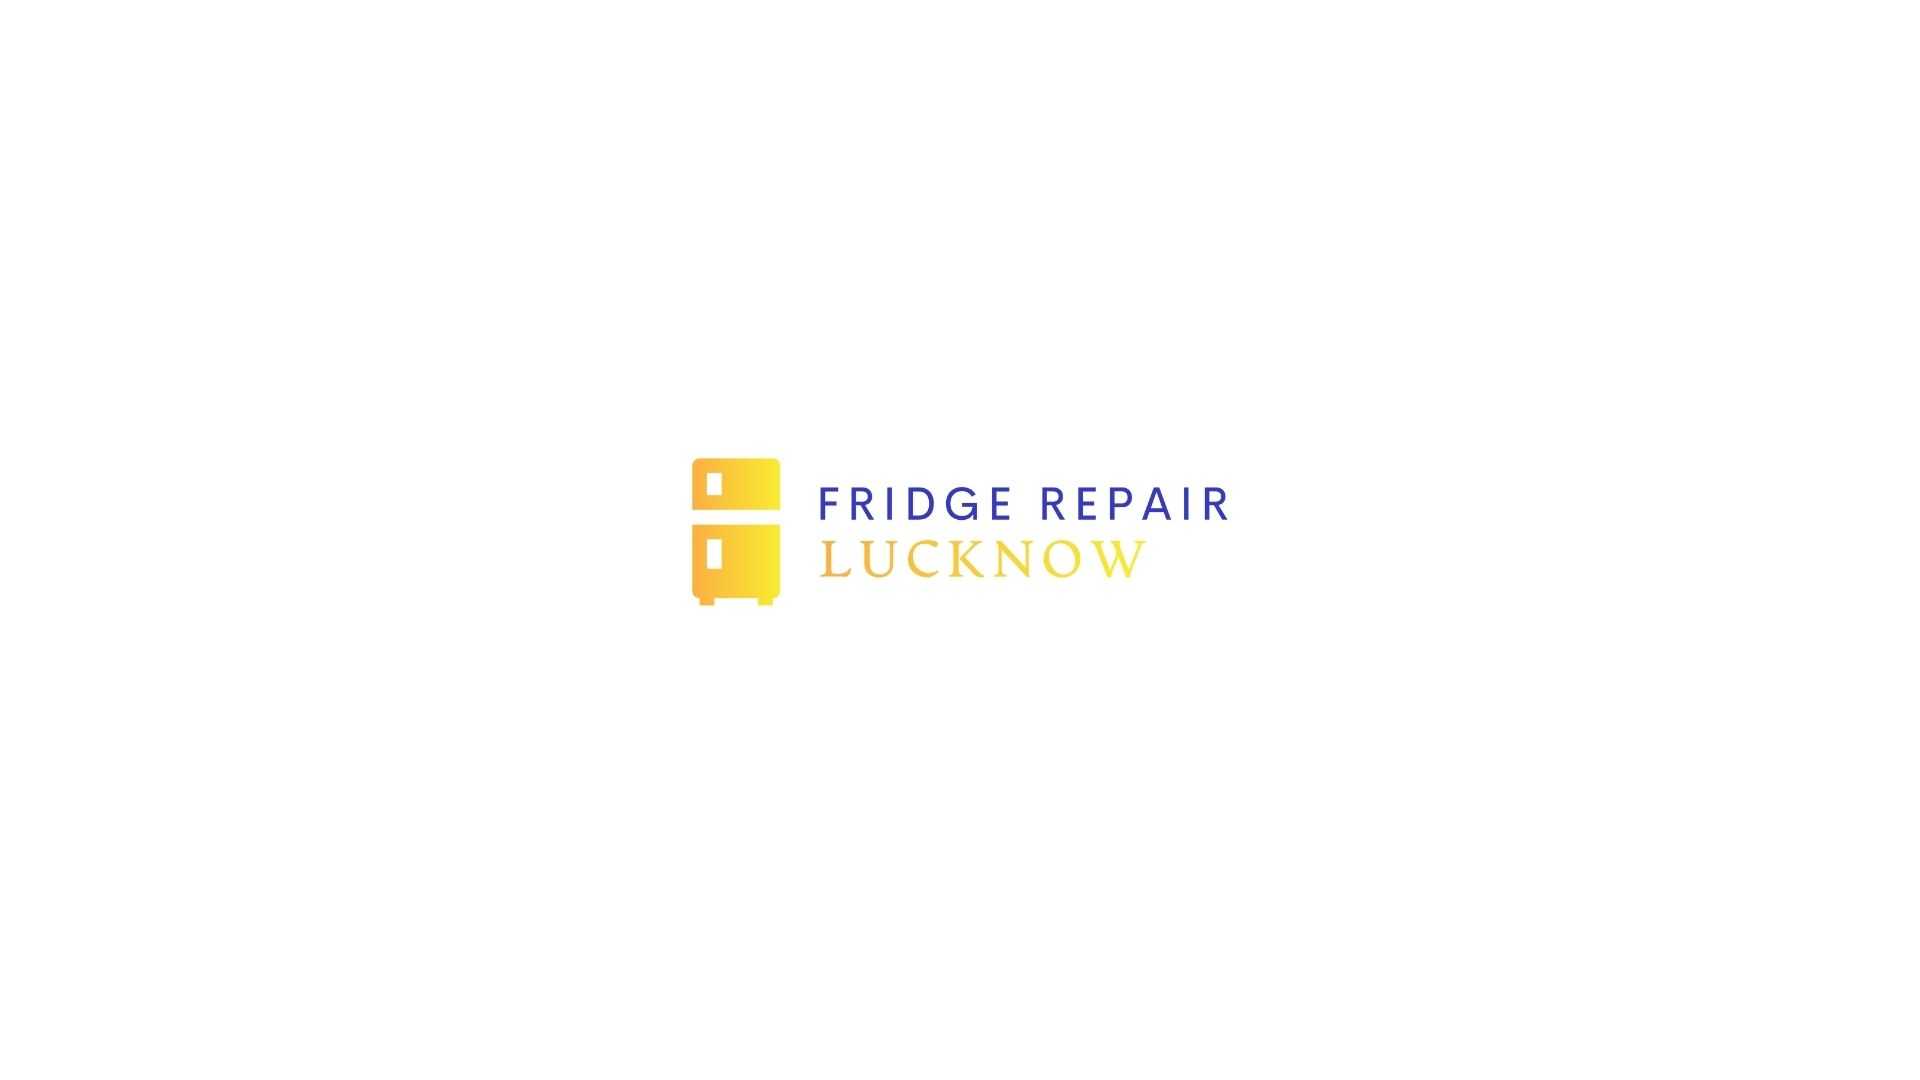 fridgerepair lucknow Profile Picture